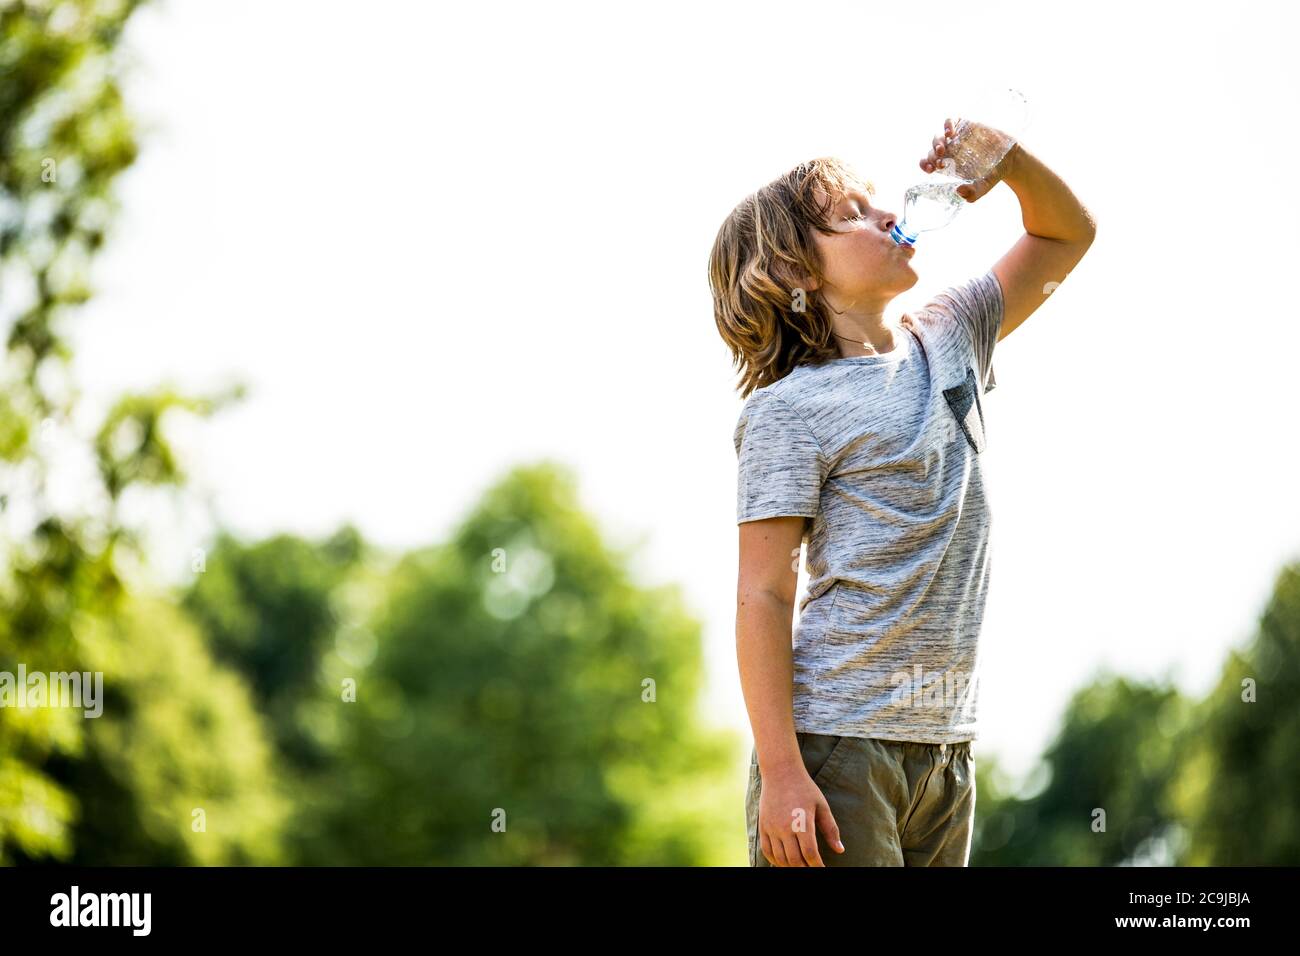 Garçon buvant de l'eau à partir d'une bouteille en plastique dans le parc. Banque D'Images